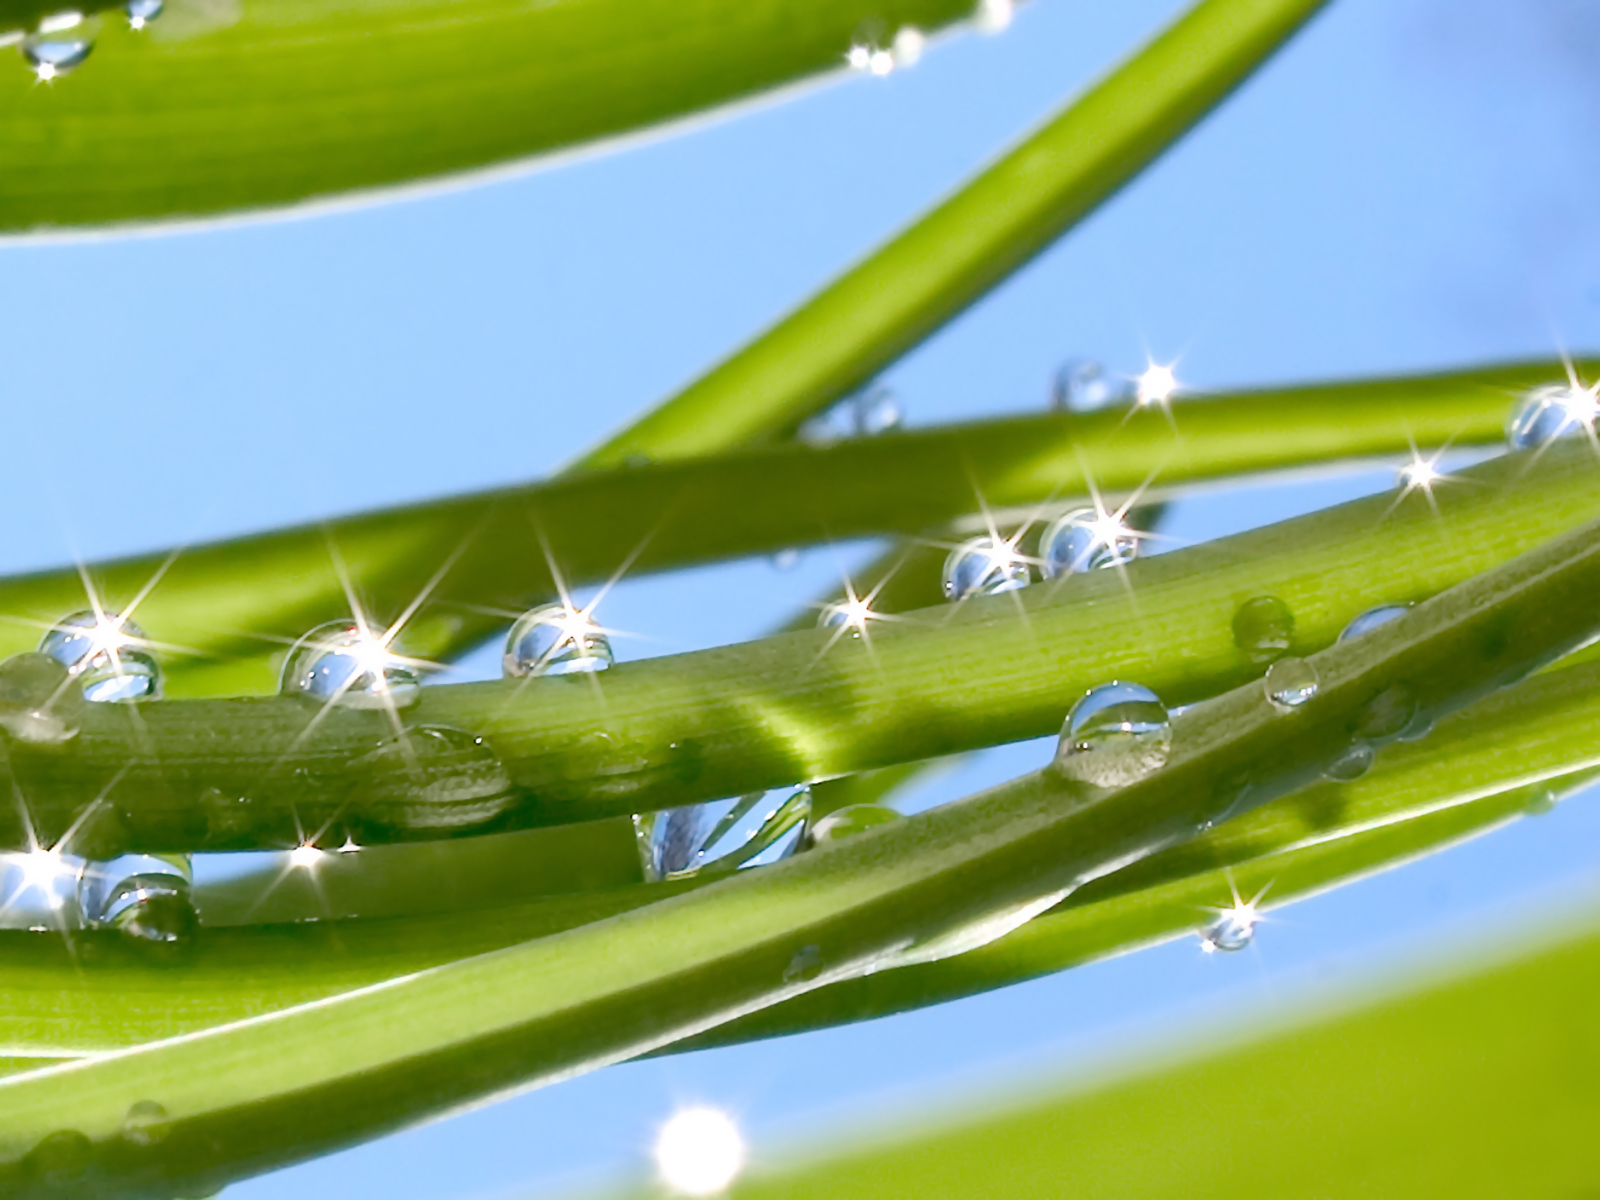 Fond d'ecran Perles de pluie sur plante